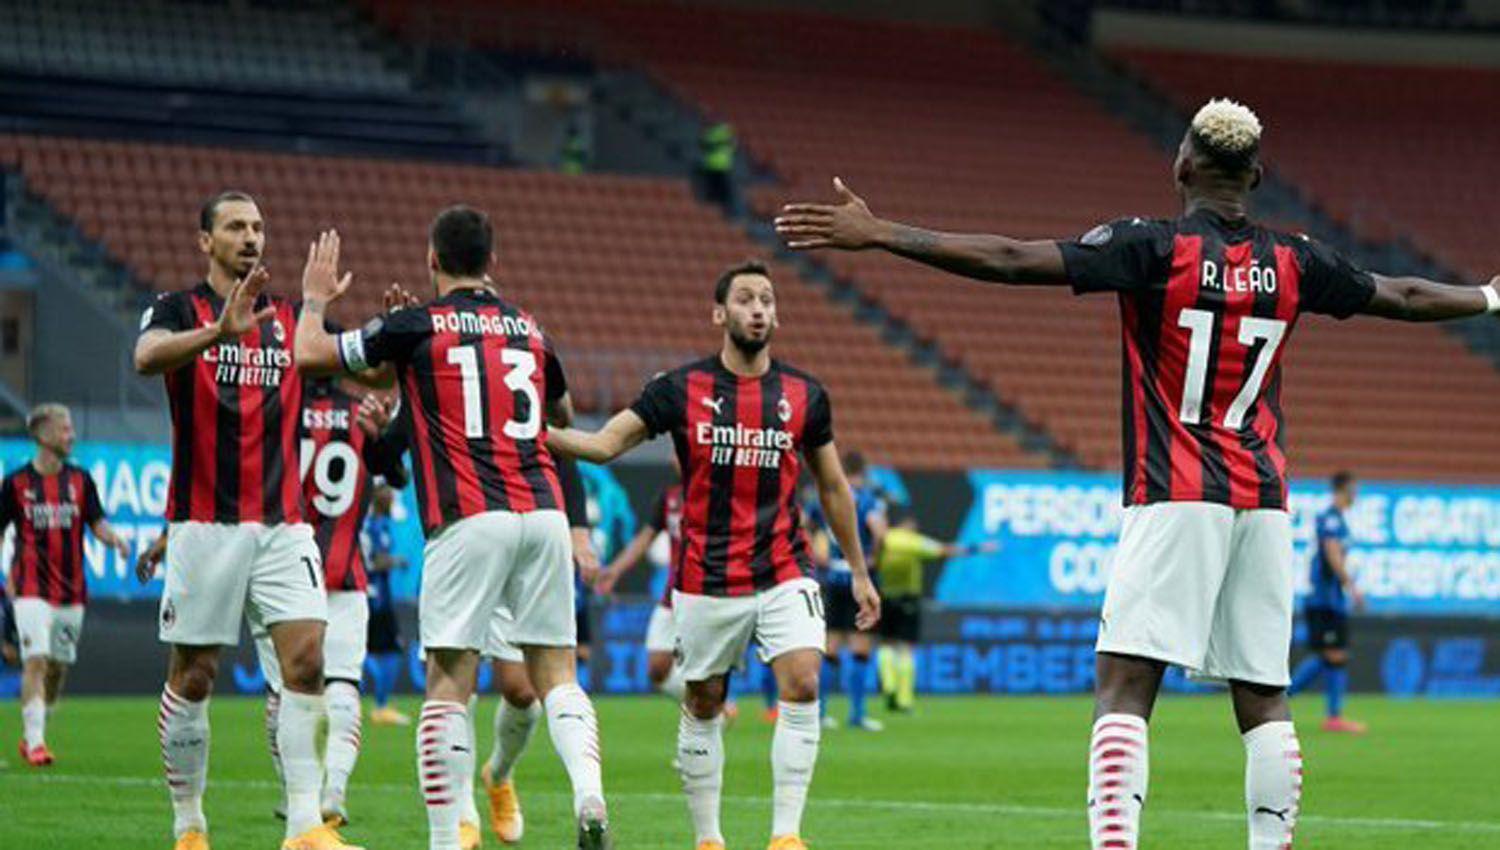 VIDEO  El Milan se quedoacute con el claacutesico ante Inter con un doblete de Ibrahimovic